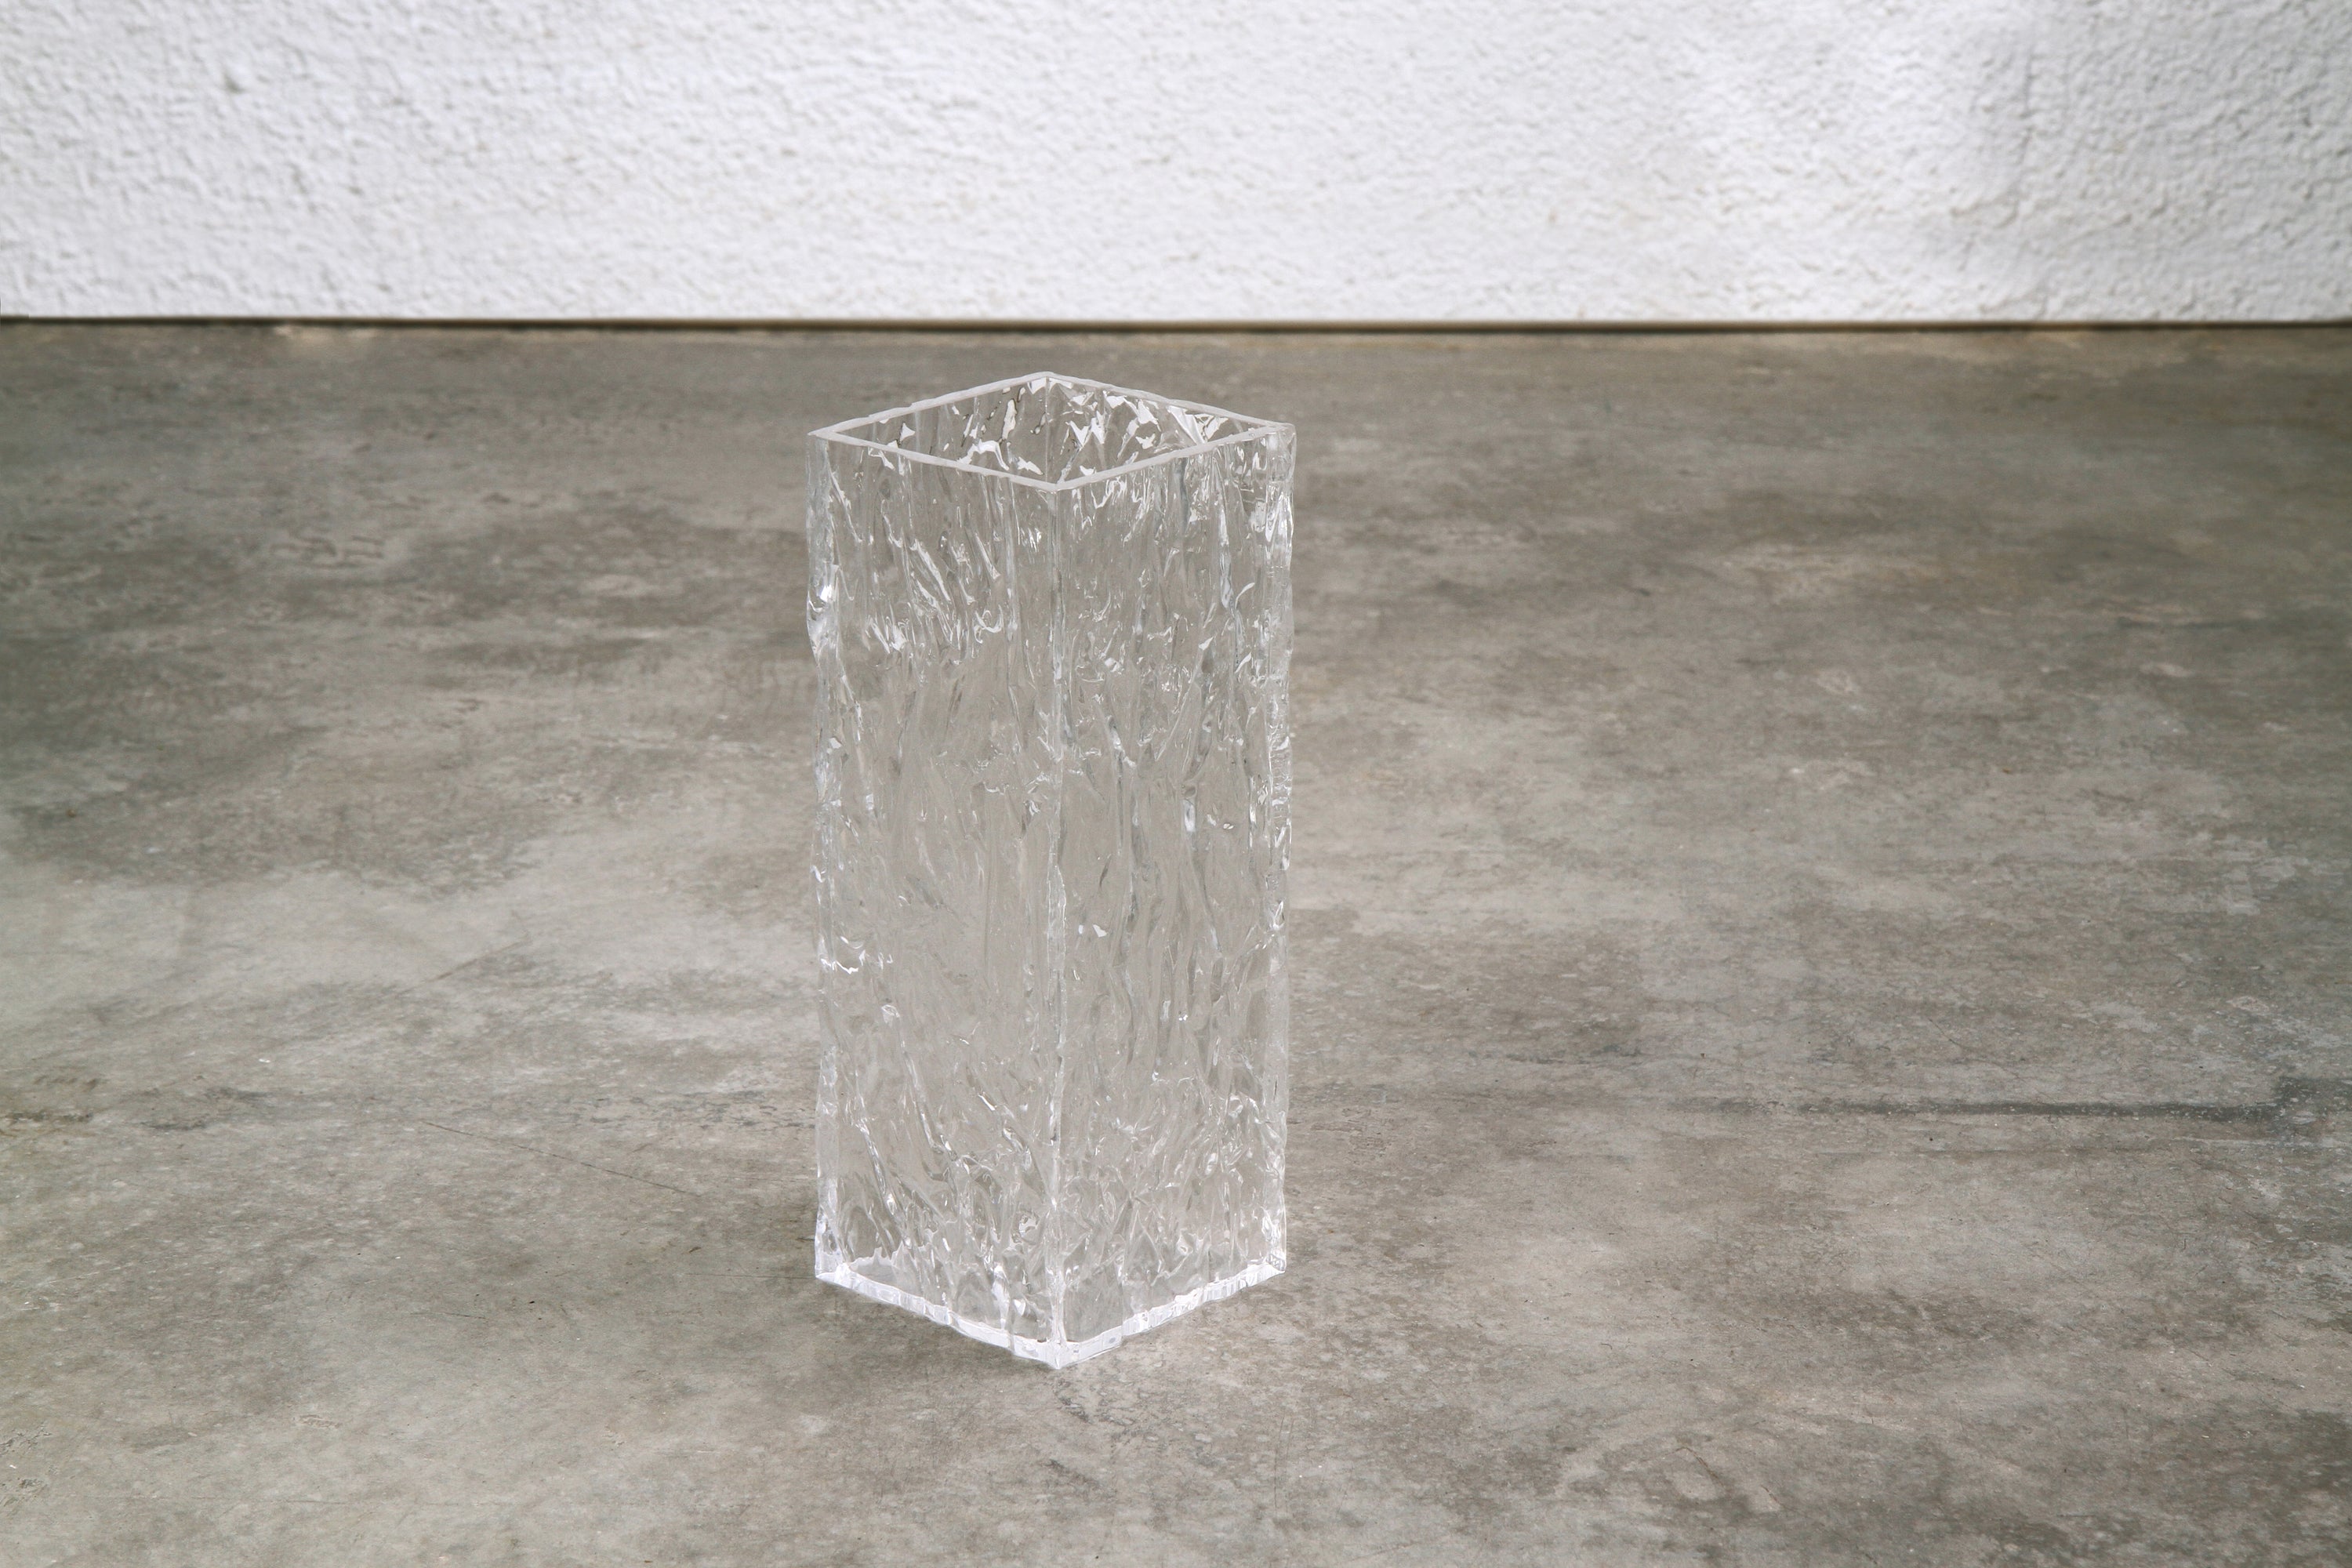 The CRUSHED ICE vase